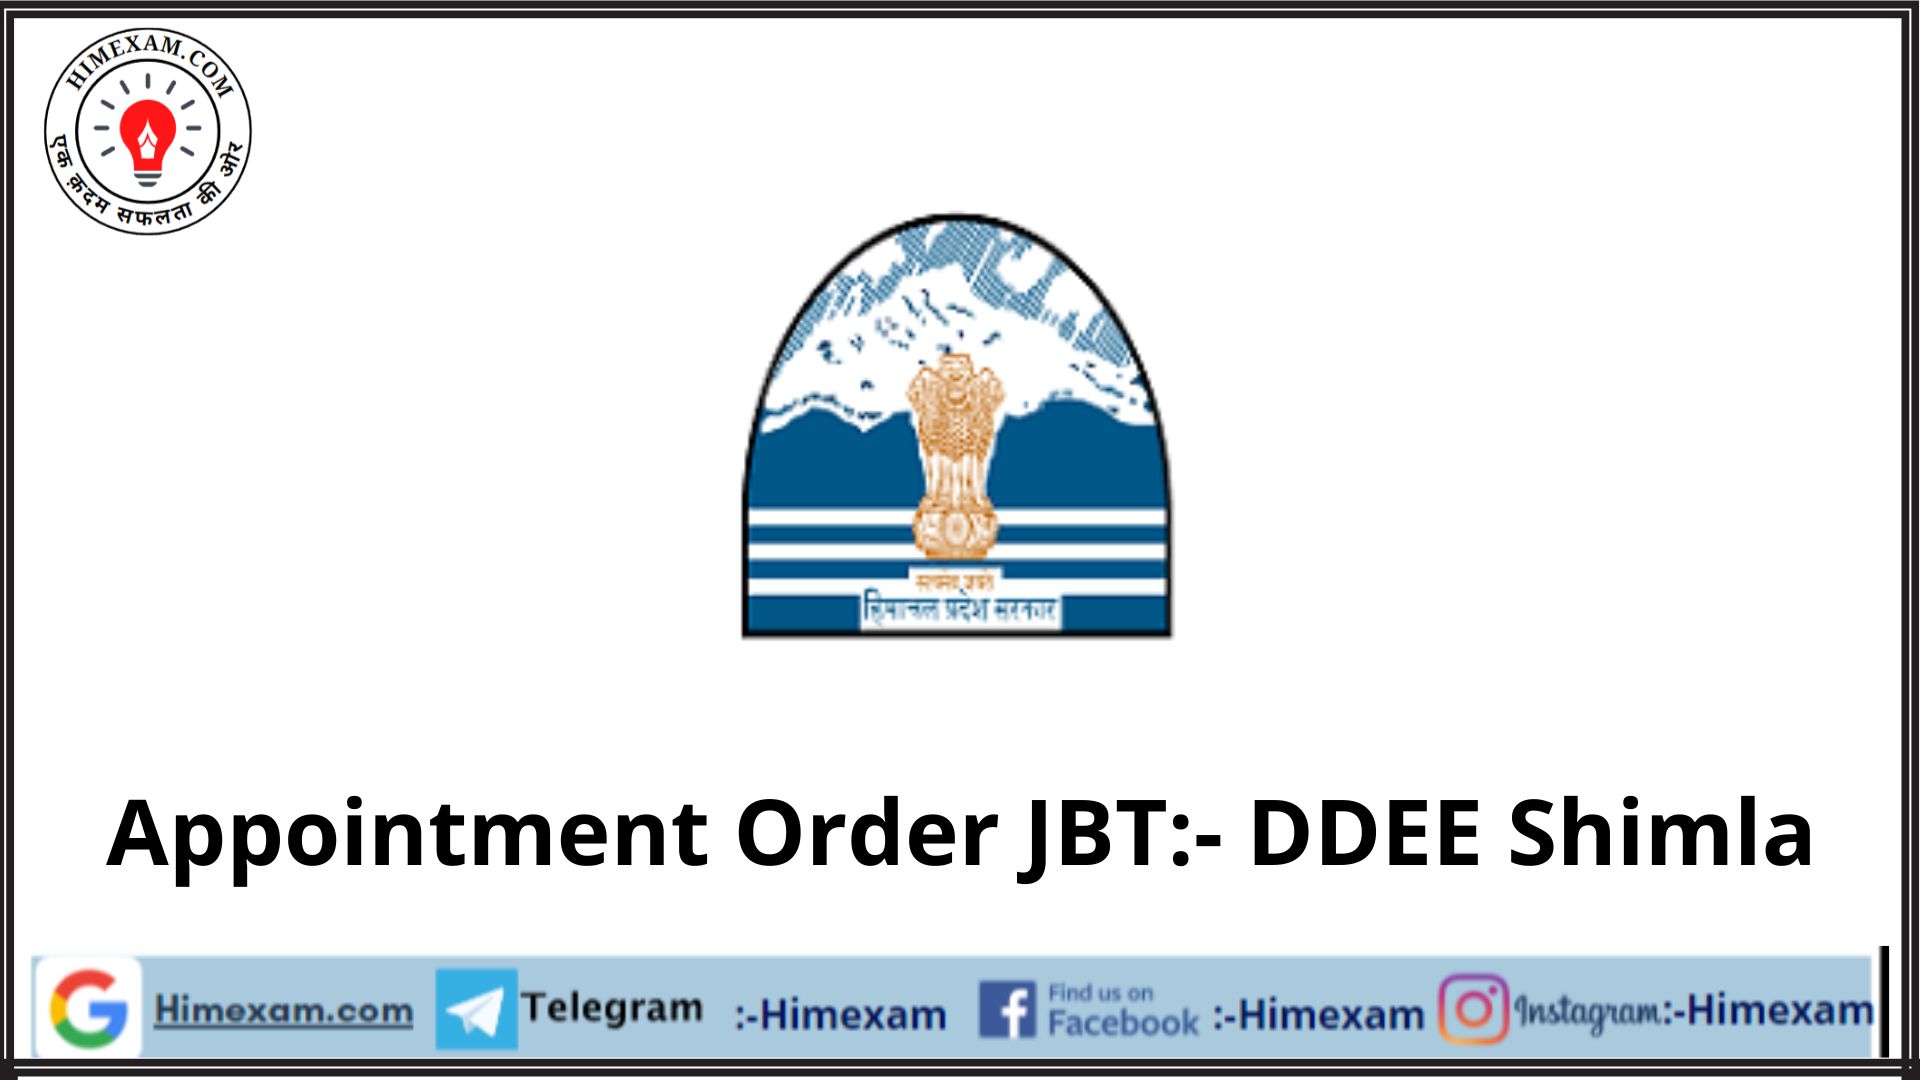 Regulasation of JBT:- DDEE Shimla